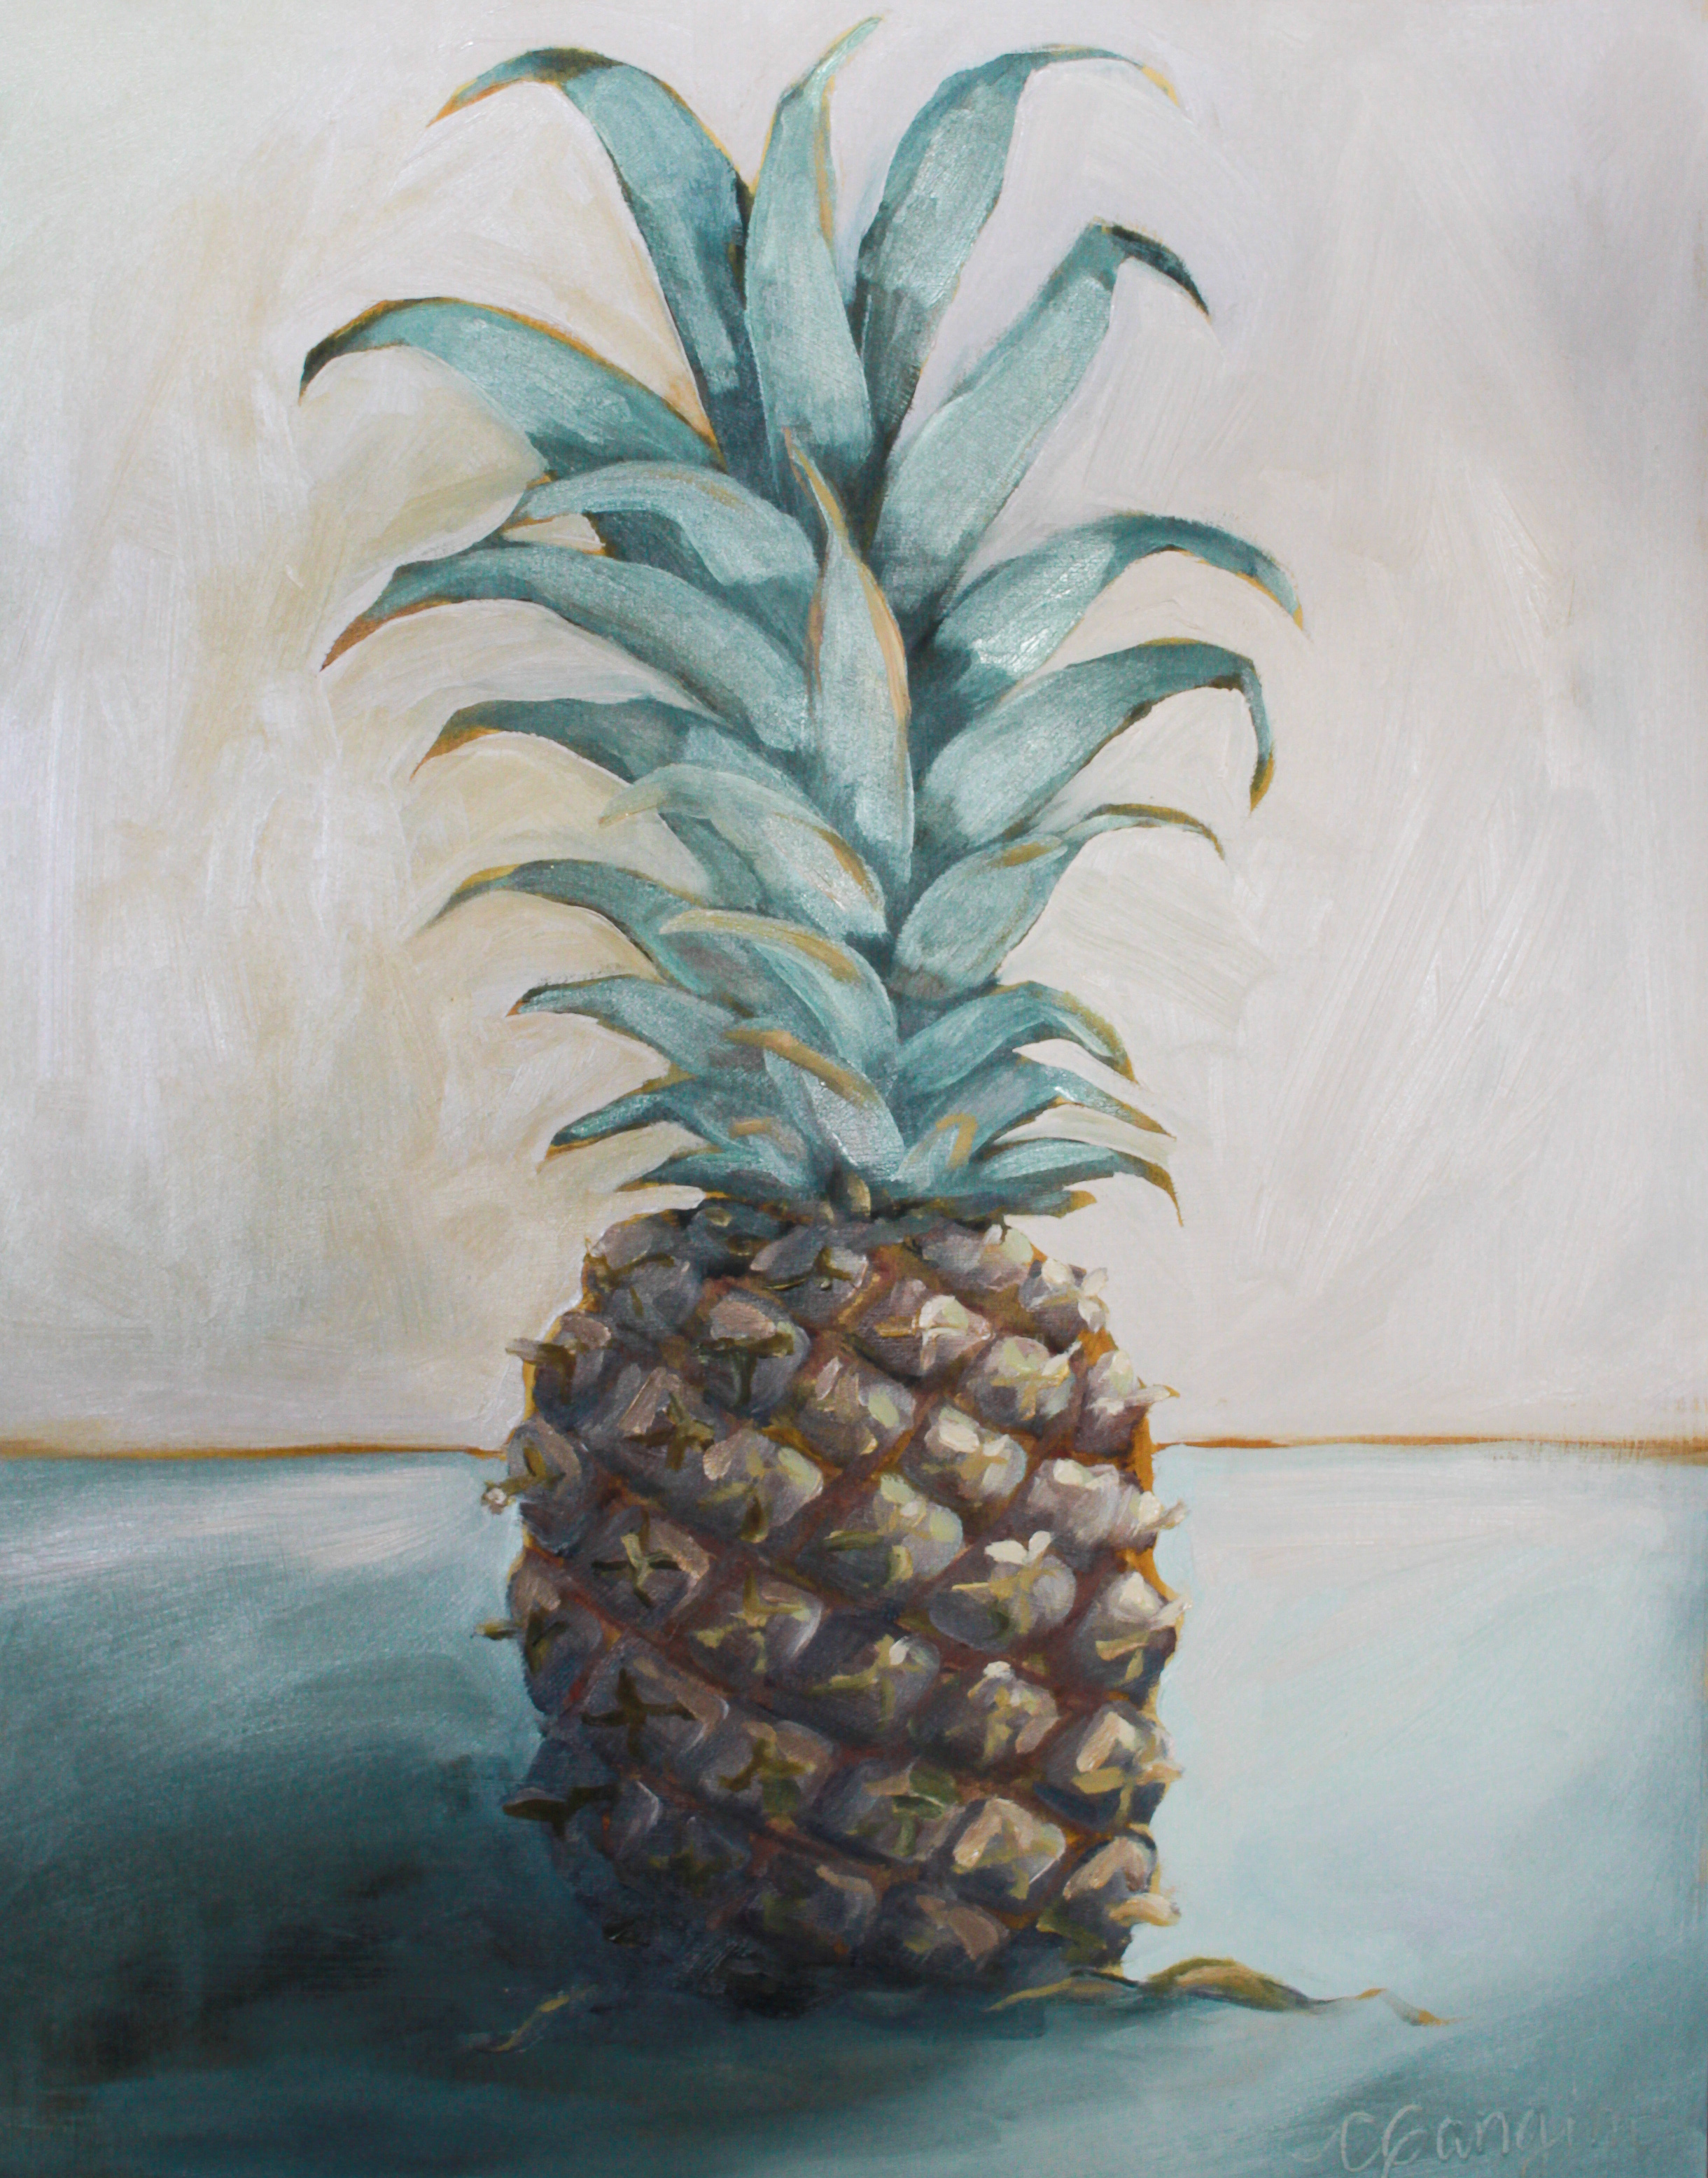 Maui Pineapple